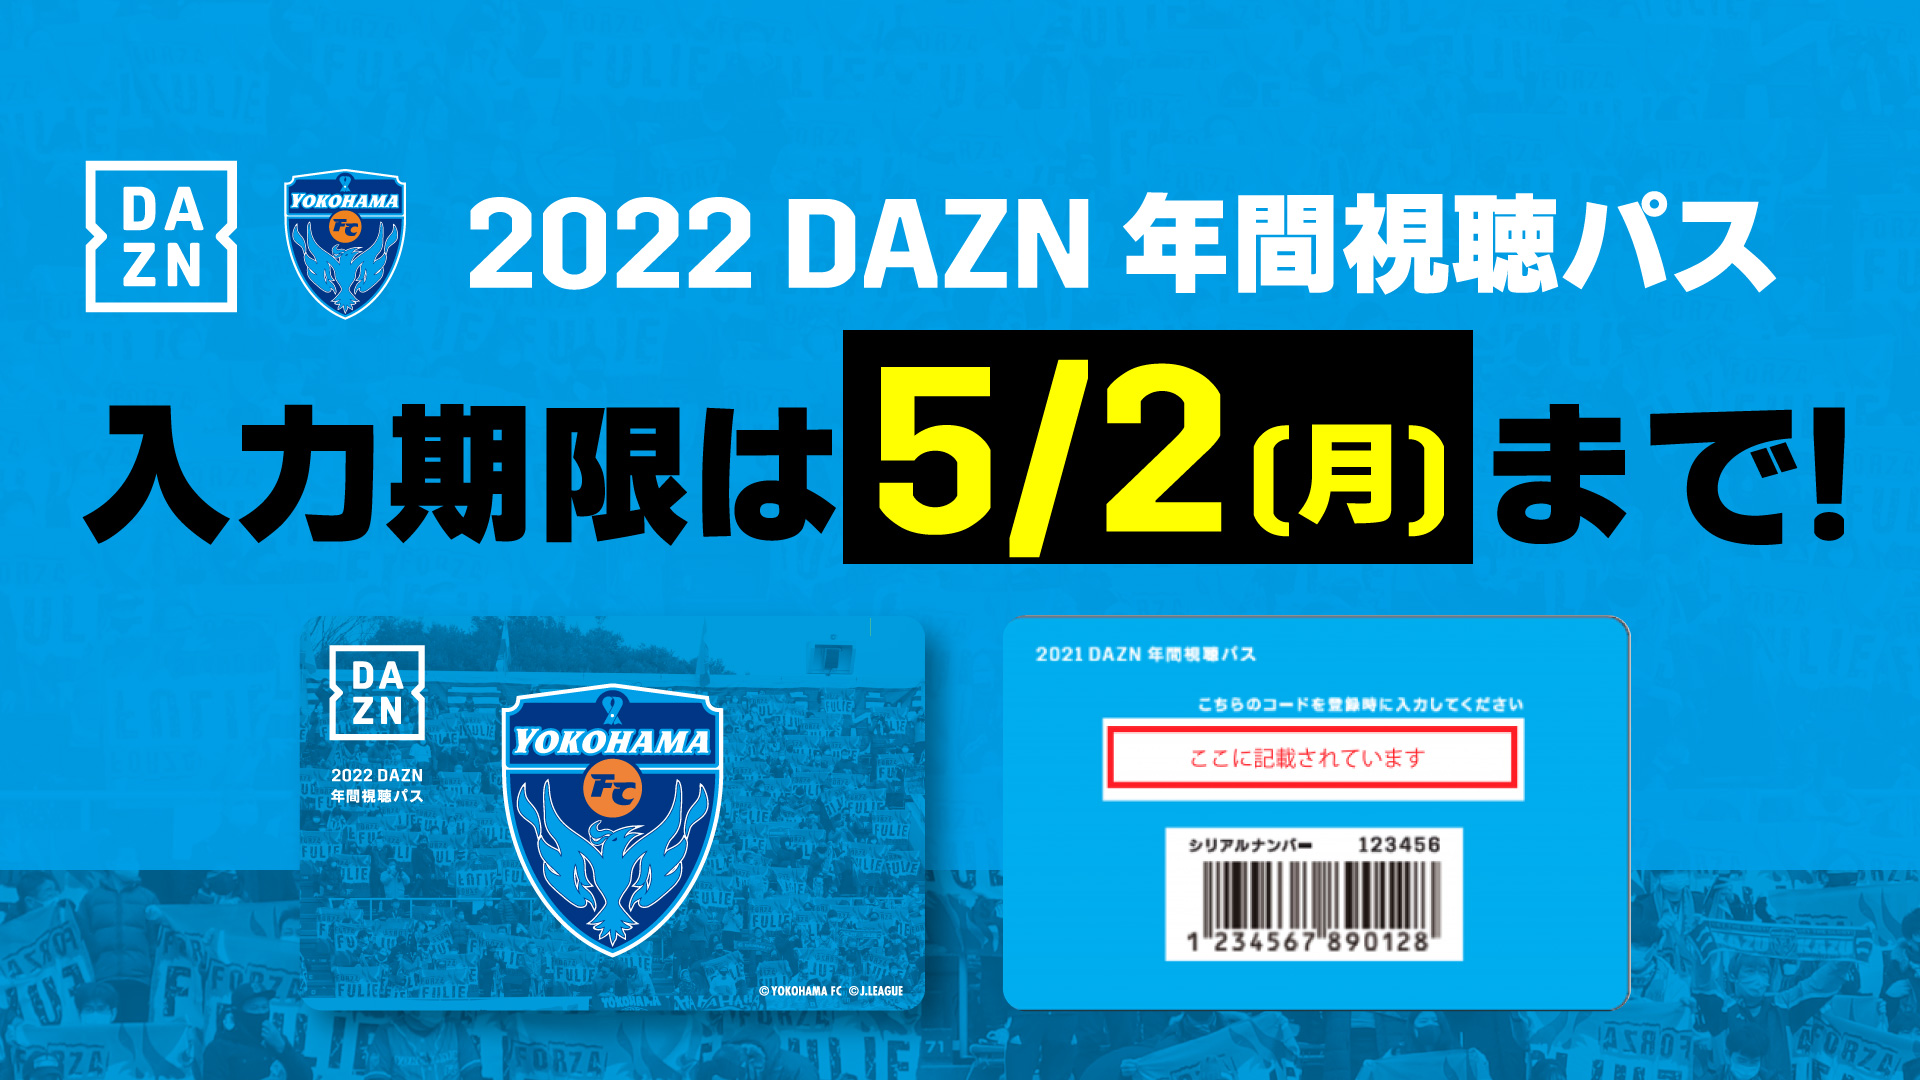 重要】「2022DAZN年間視聴パス」の入力期限は5/2(月)まで | 横浜FC ...